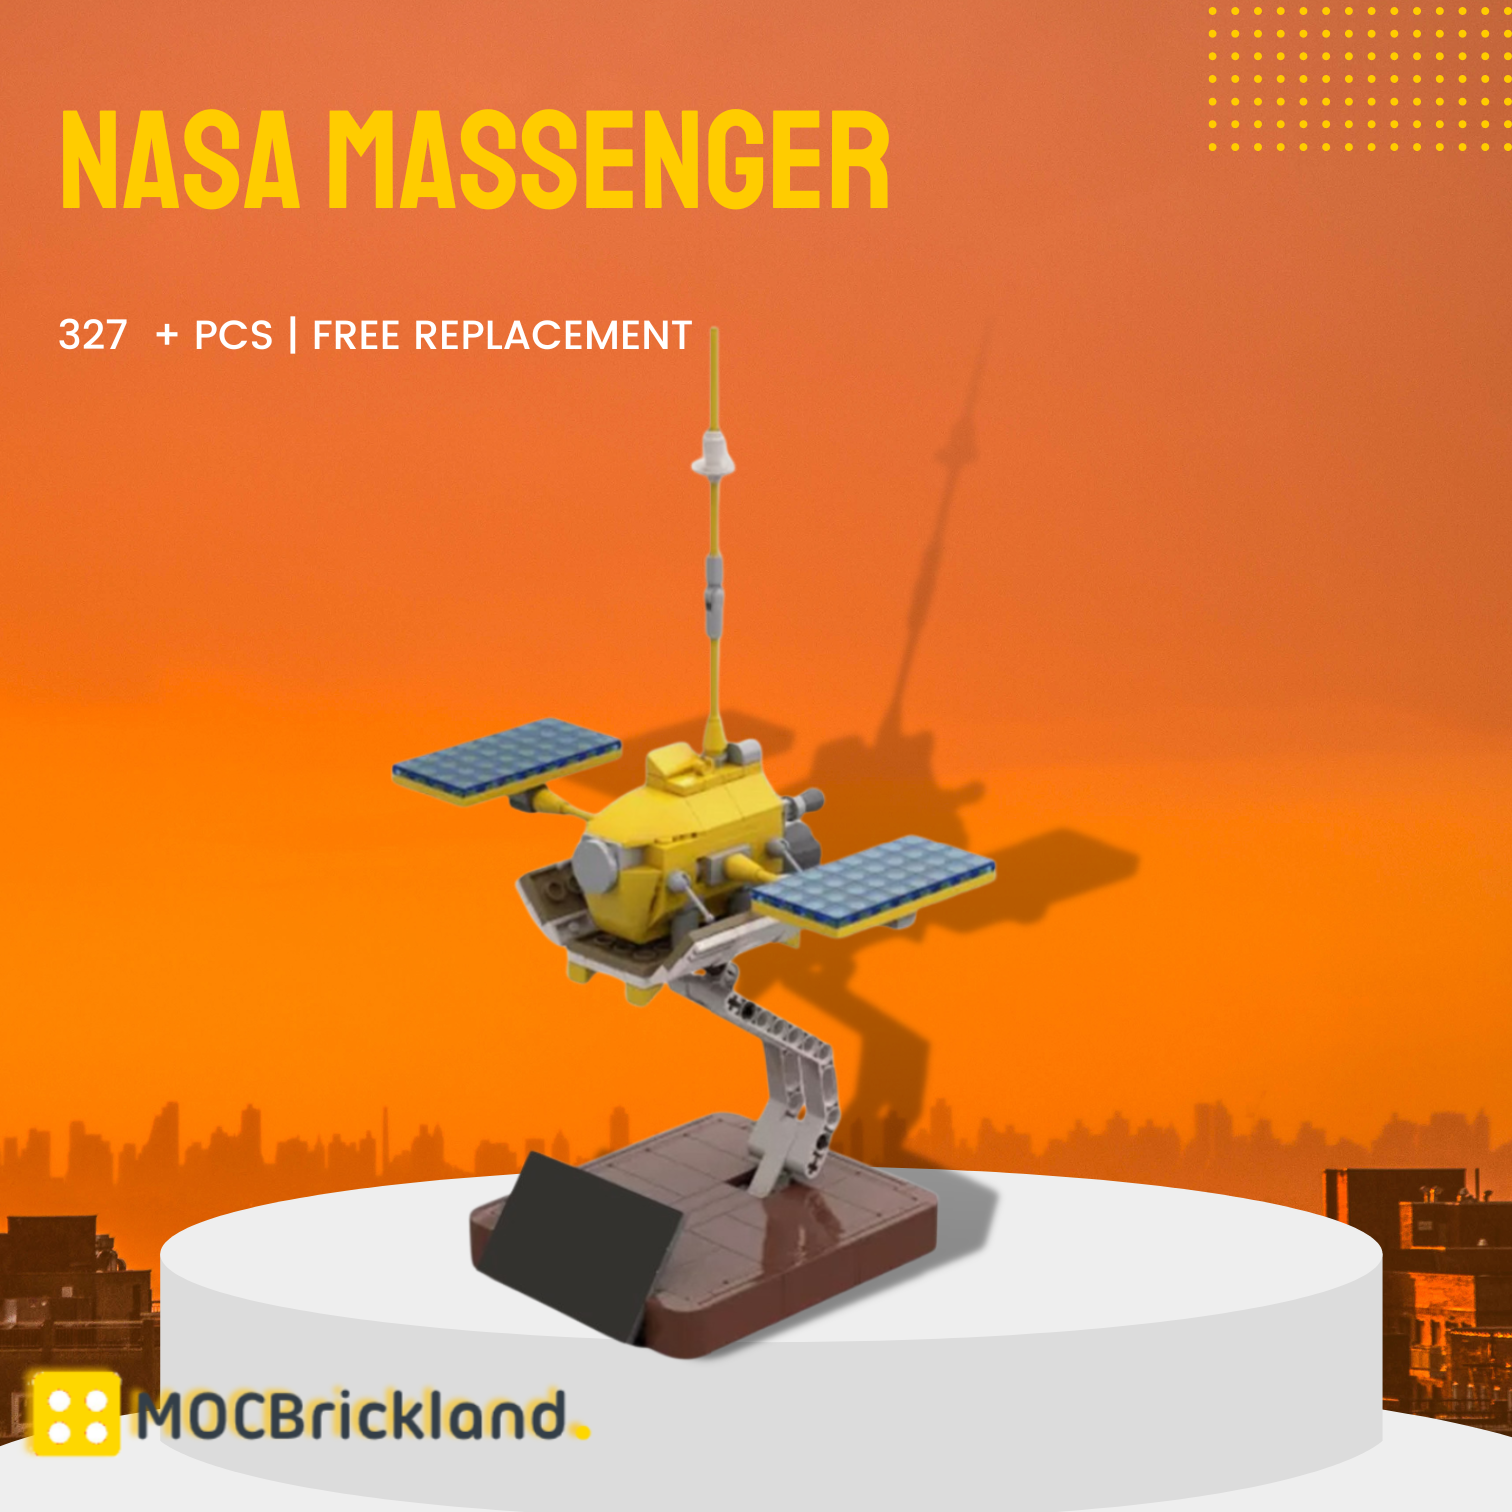 Space MOC-93533 NASA Massenger MOCBRICKLAND